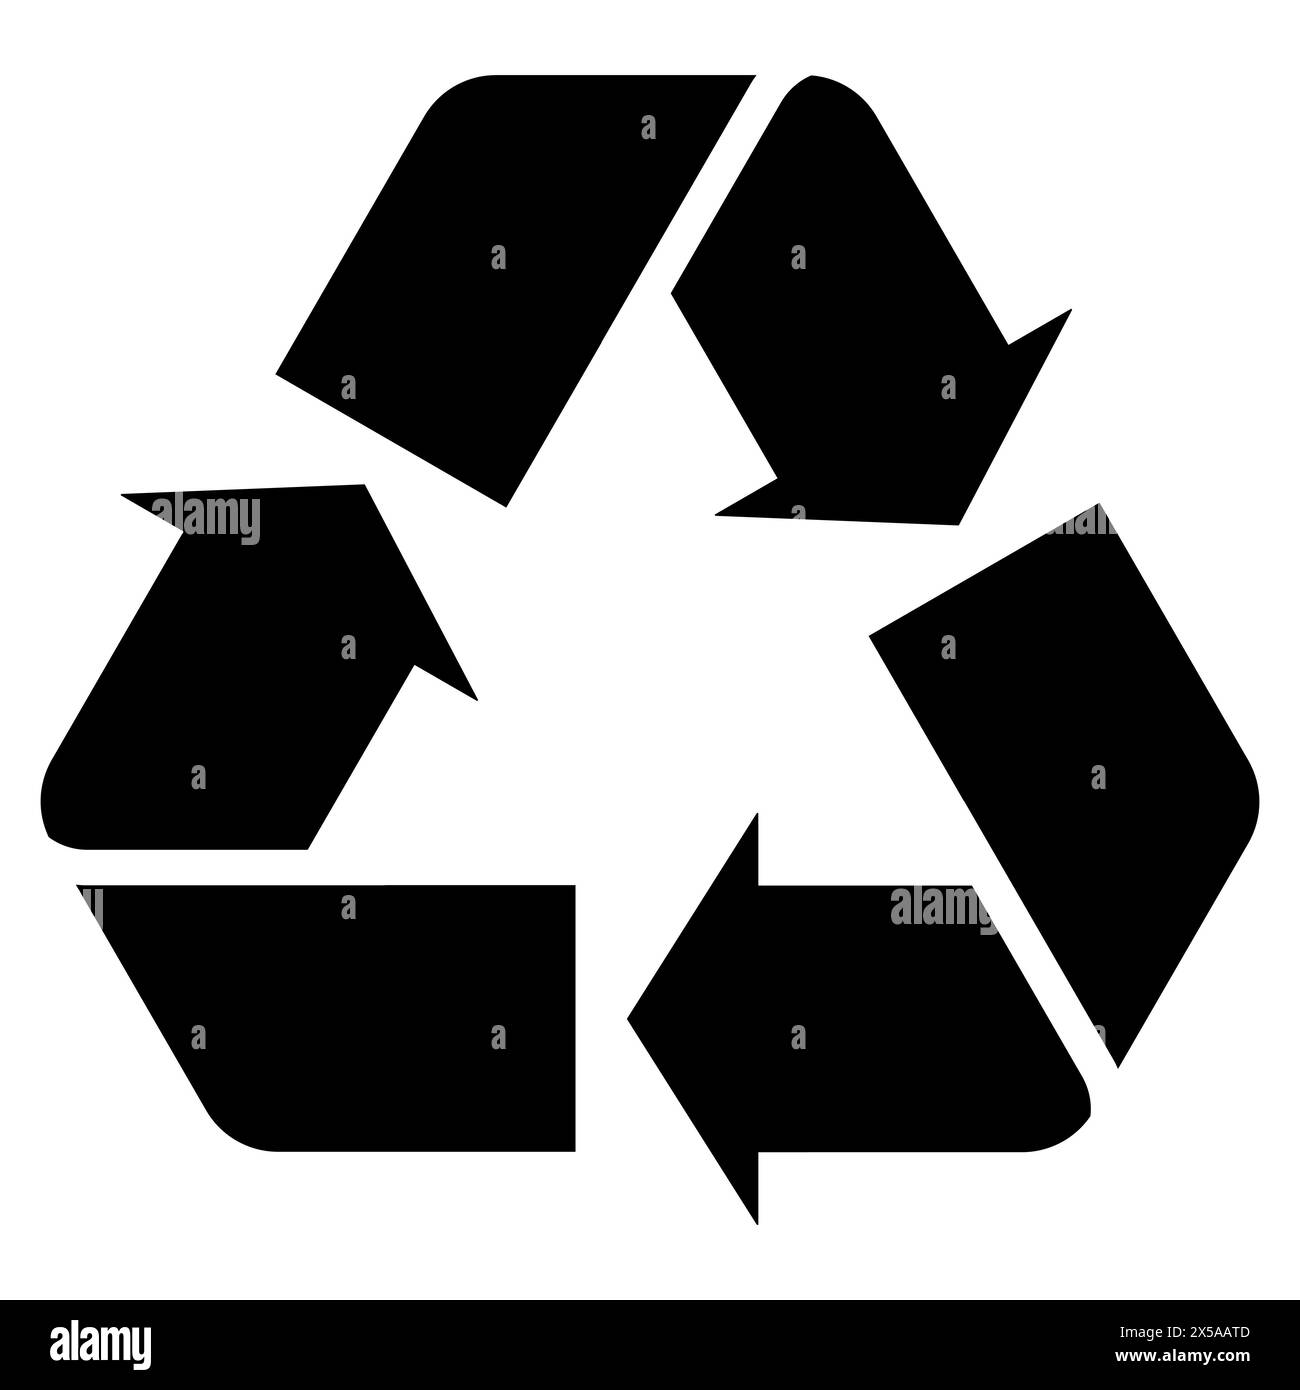 Icona del riciclo icona del vettore piatto nero elegante e moderno che rappresenta il simbolo universale del riciclaggio. Questo design minimalista è perfetto Illustrazione Vettoriale